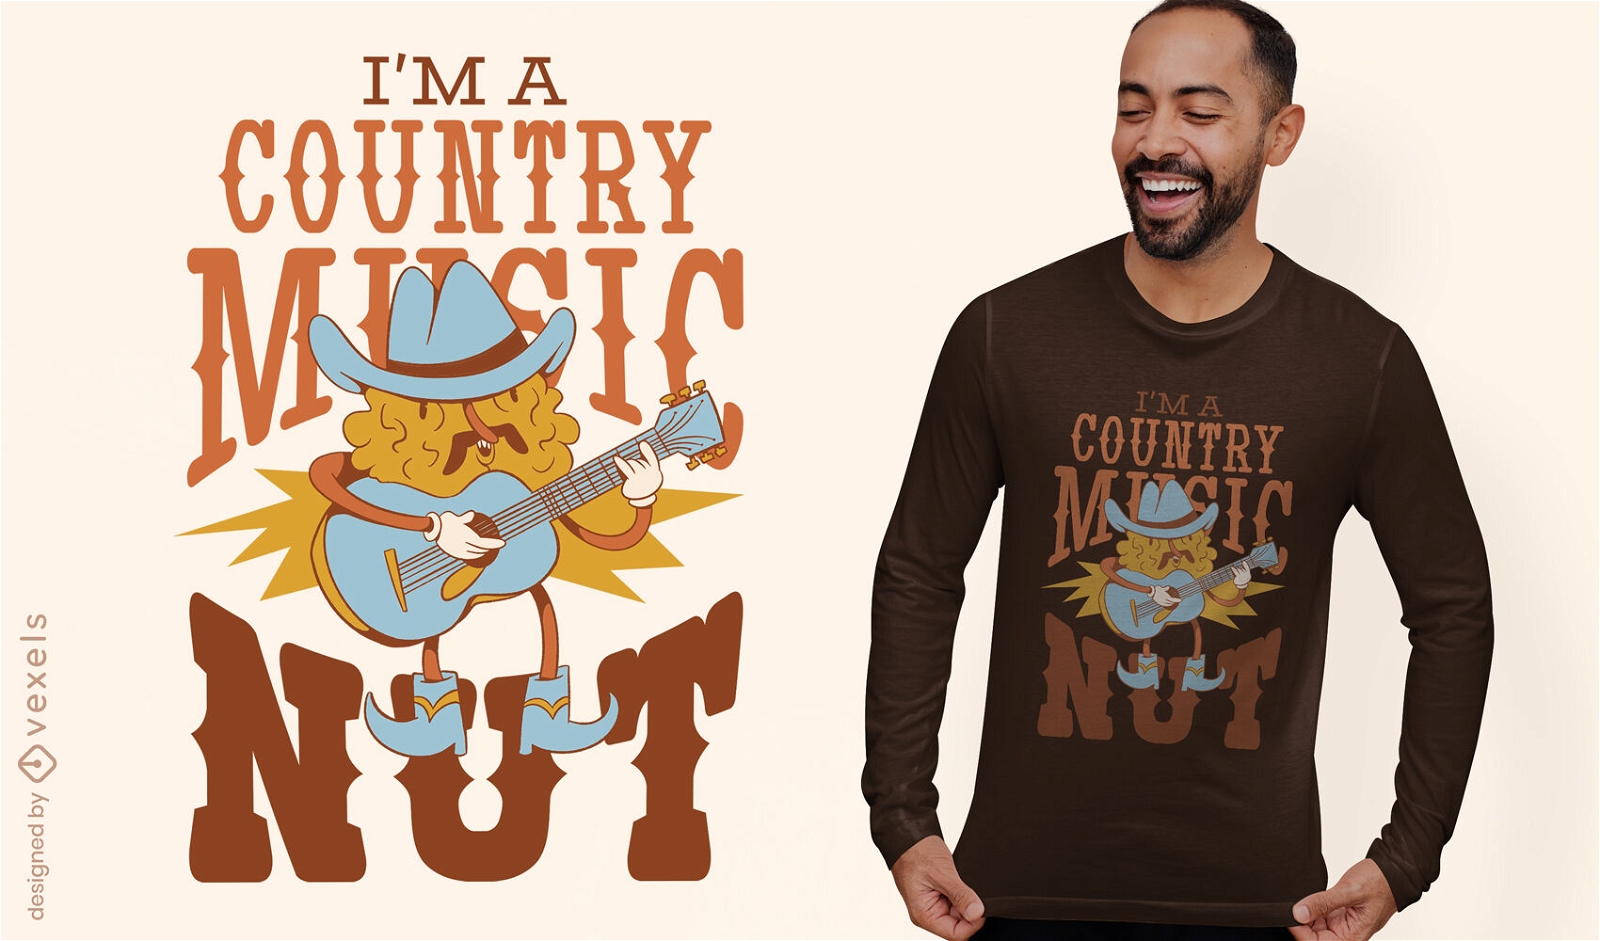 Dise?o de camiseta de personaje de m?sica country.